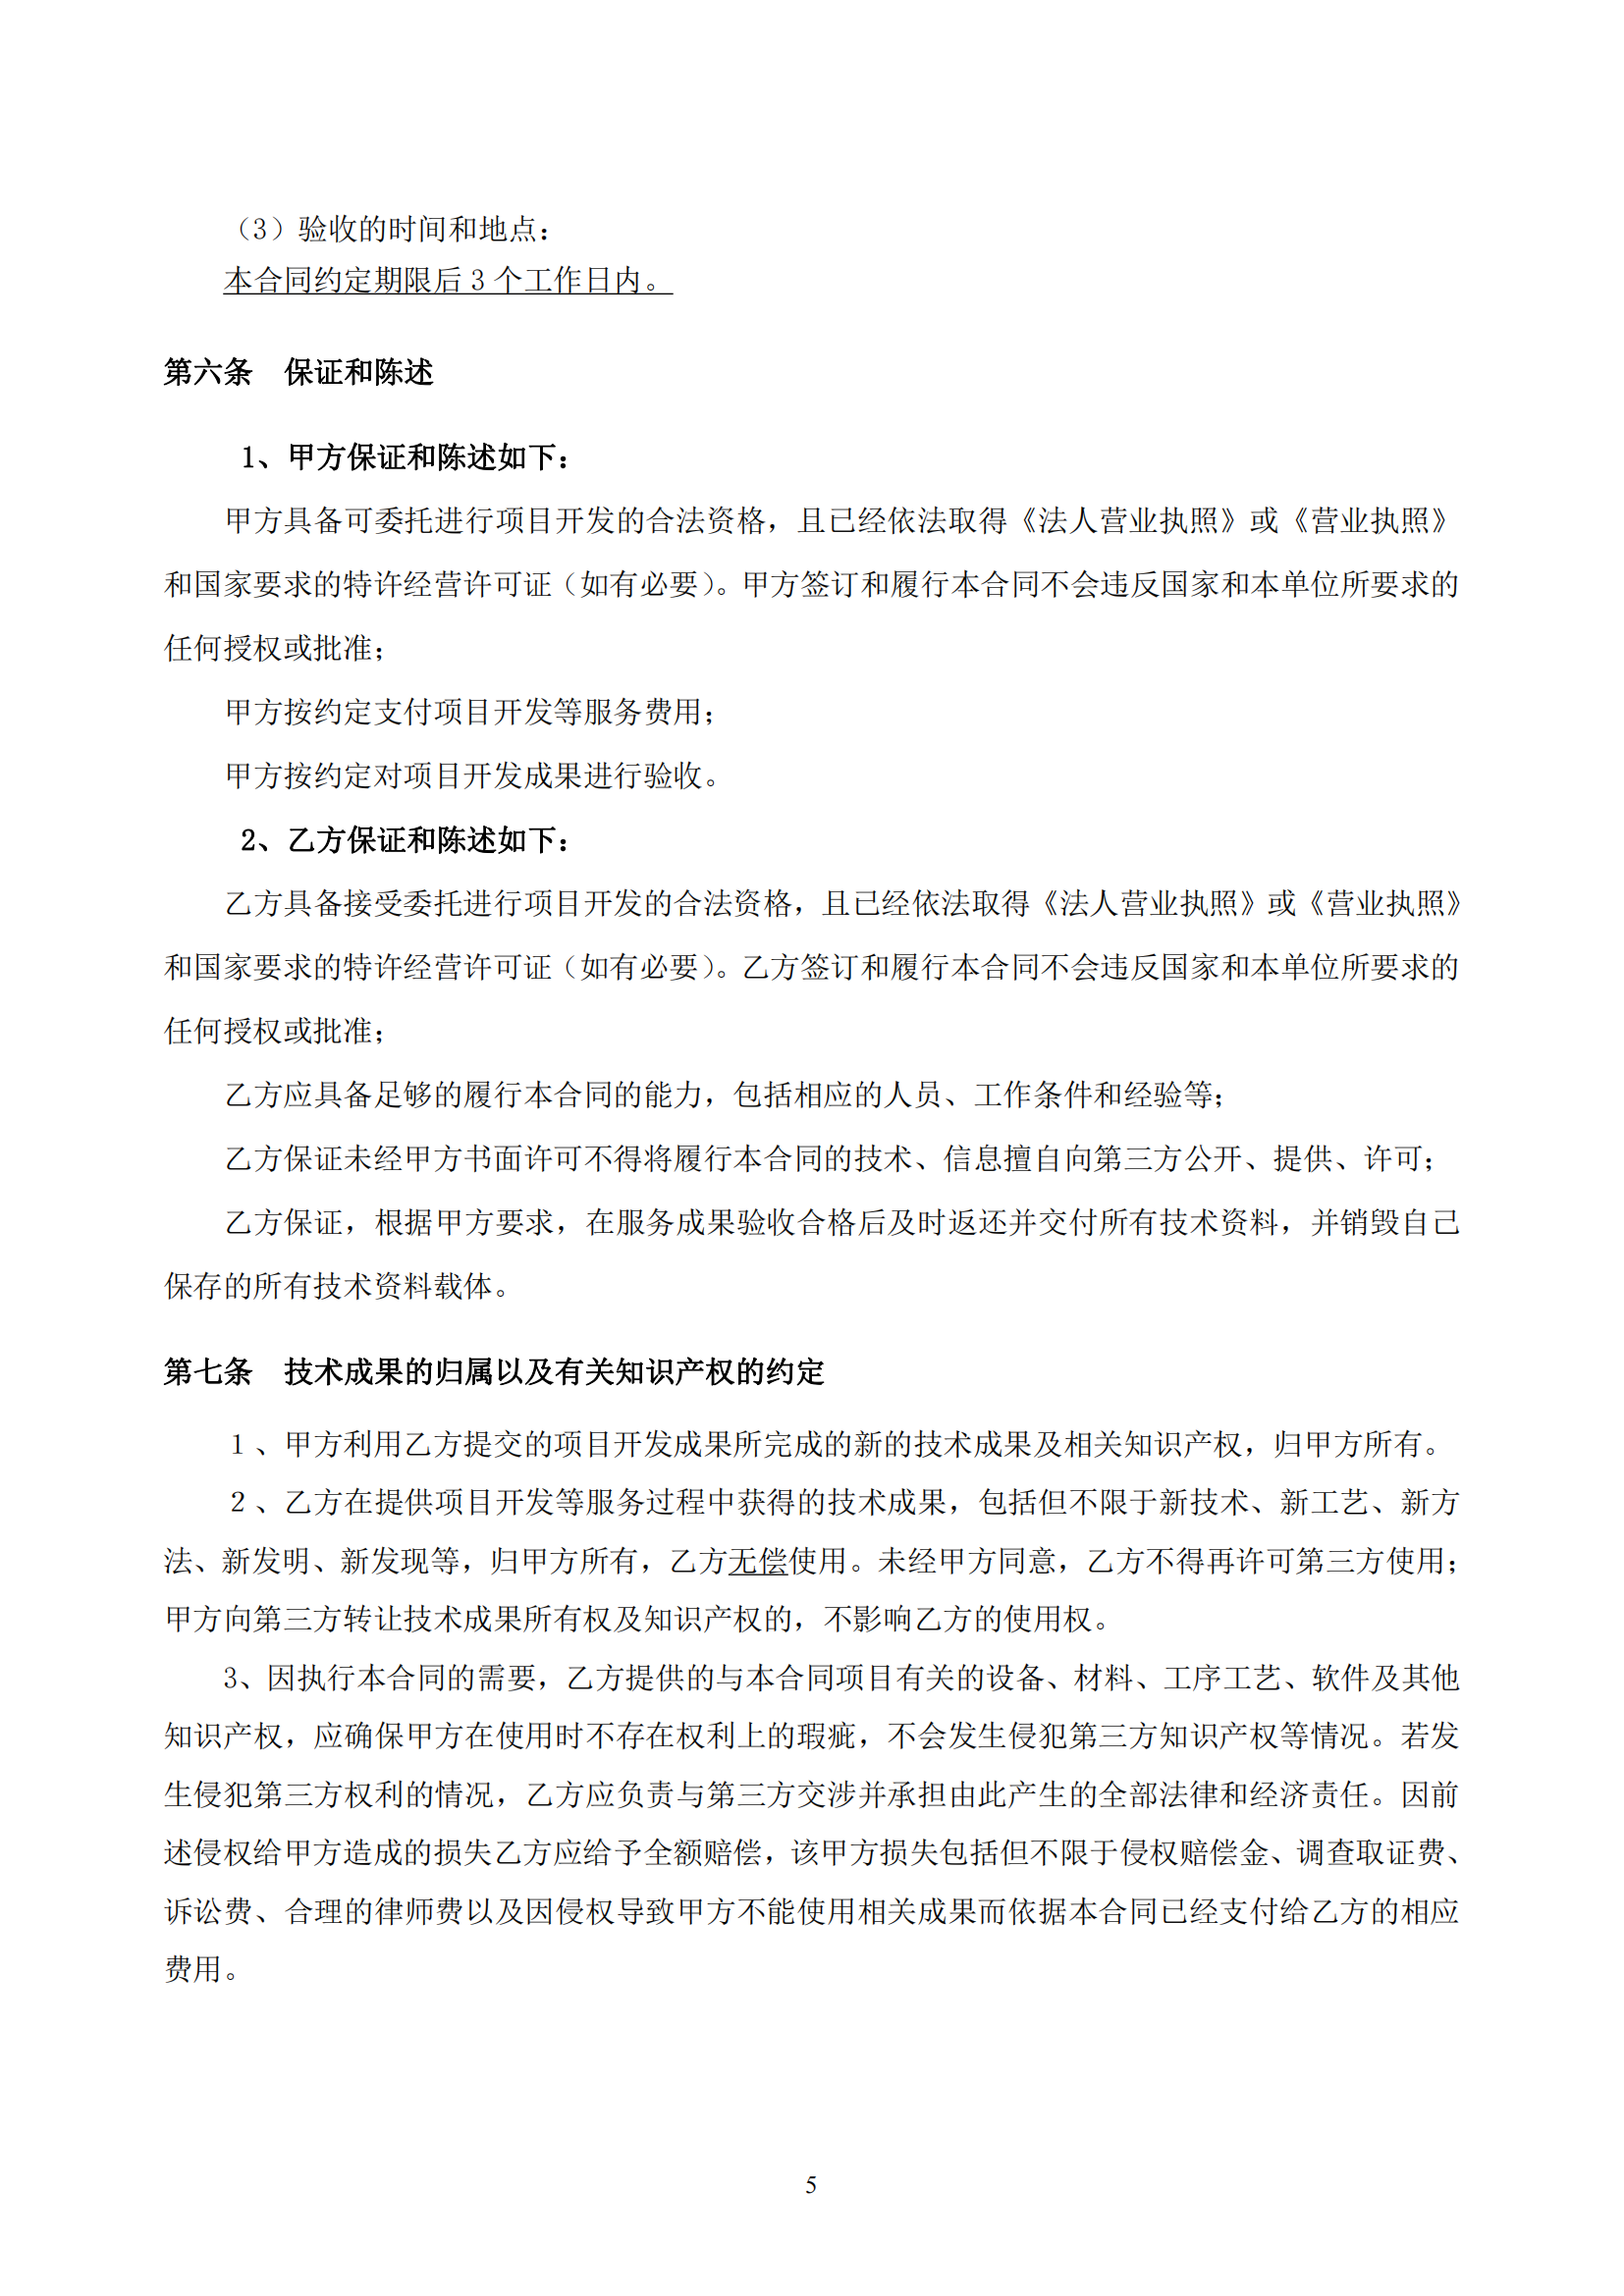 武汉妇联官方微信新媒体运维及改版升级项目合同_05.png